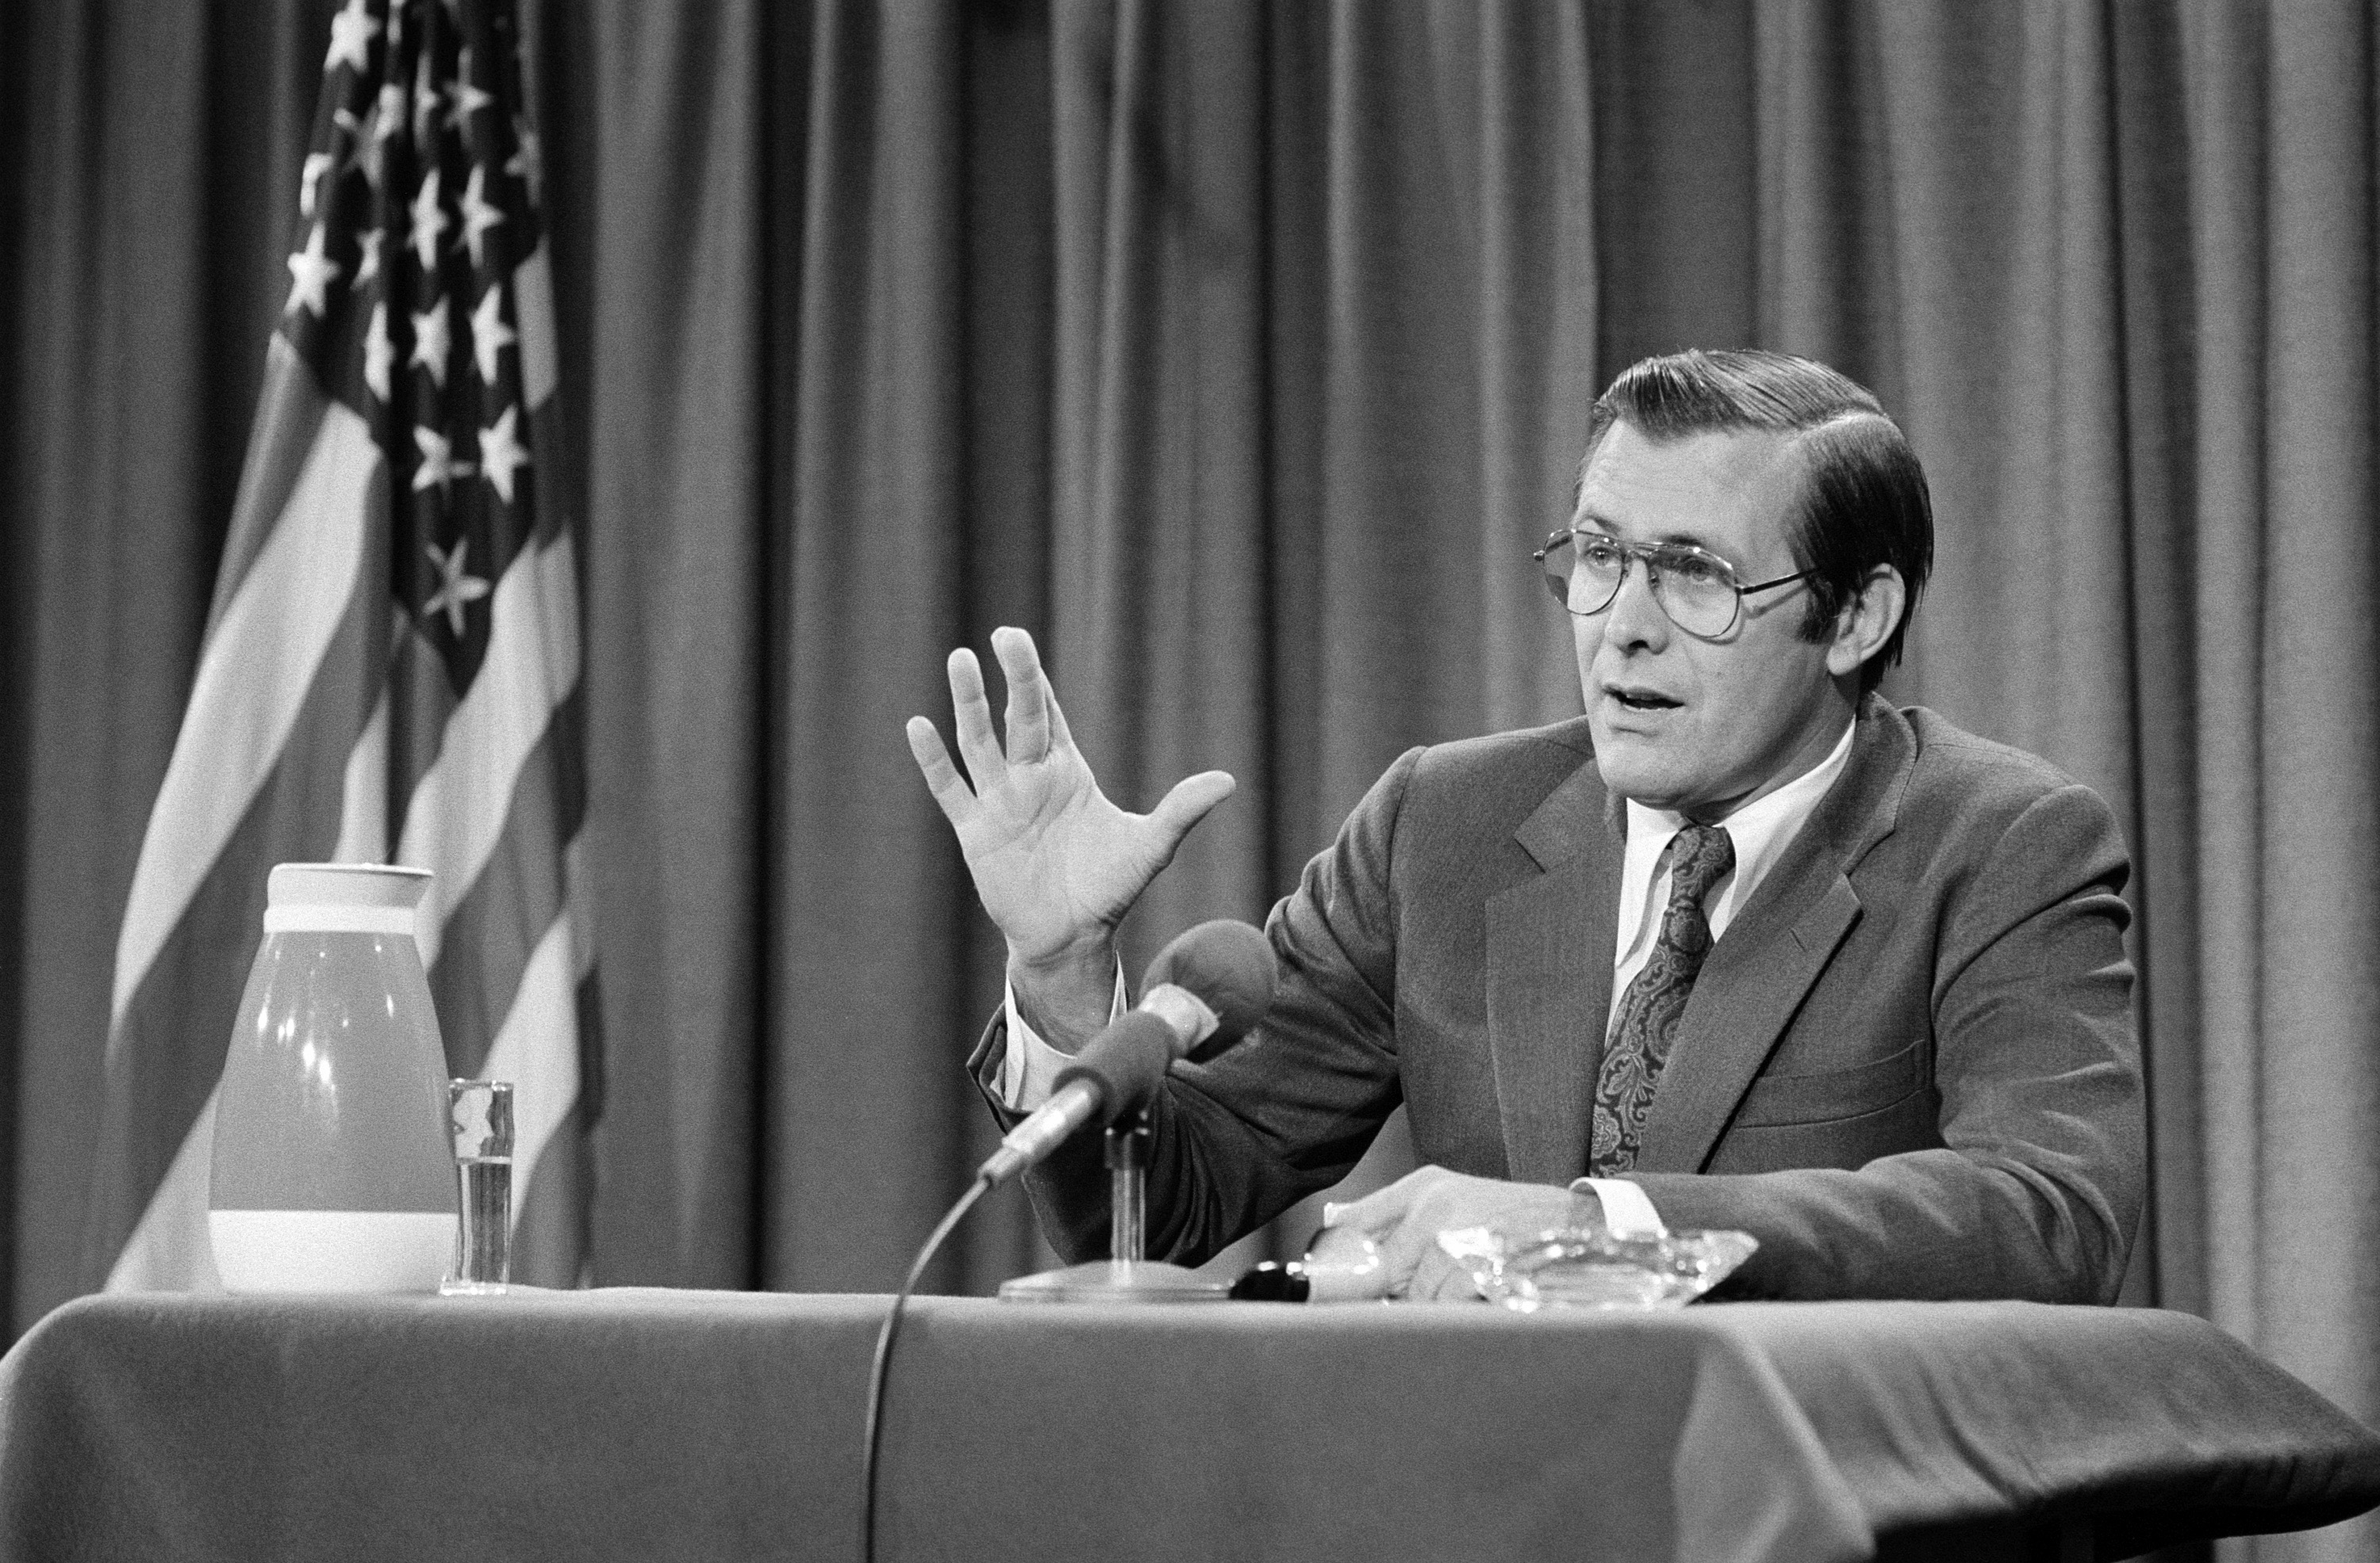 Donald Rumsfeld in 1976